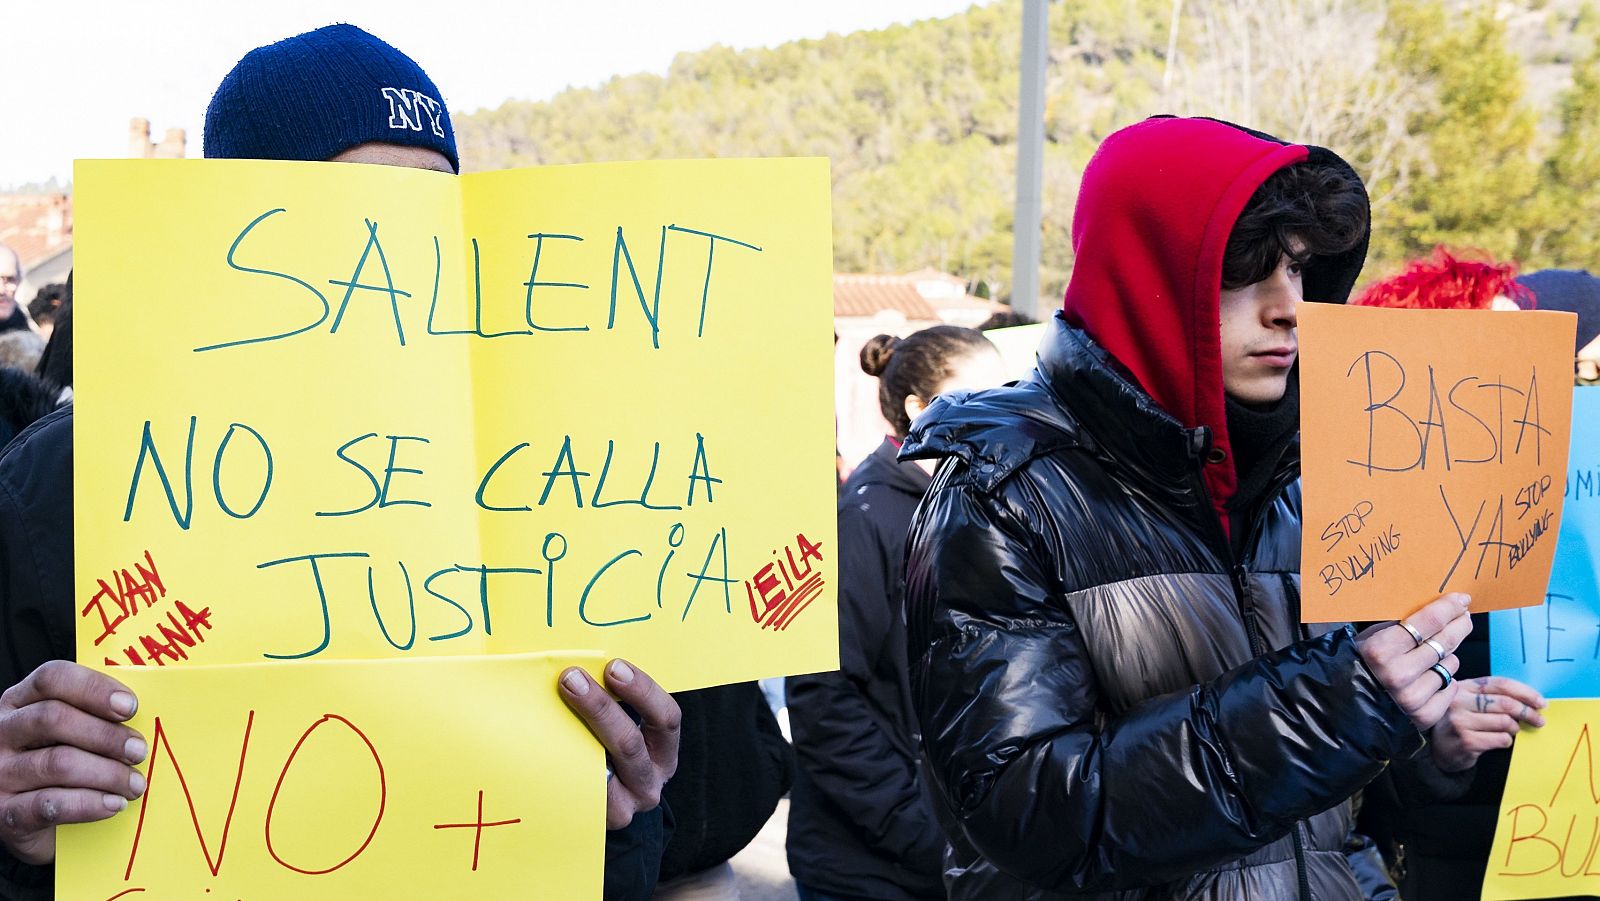 Una marcha silenciosa clama "justicia" tras el suicidio de las gemelas de Sallent